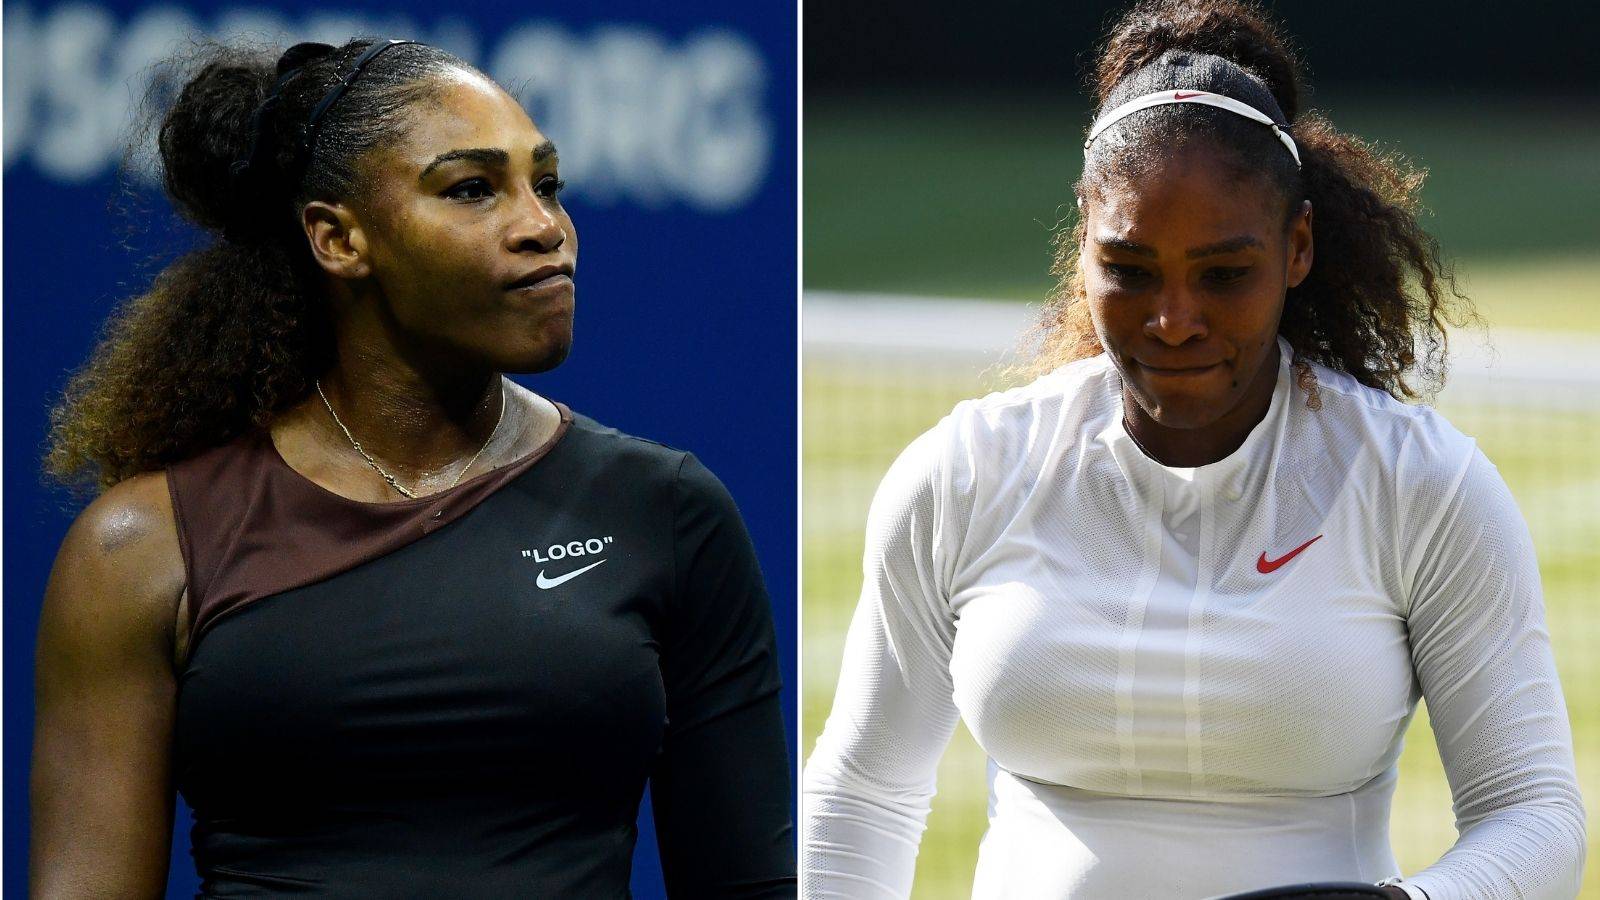 Serena Williams Grand Slam finals